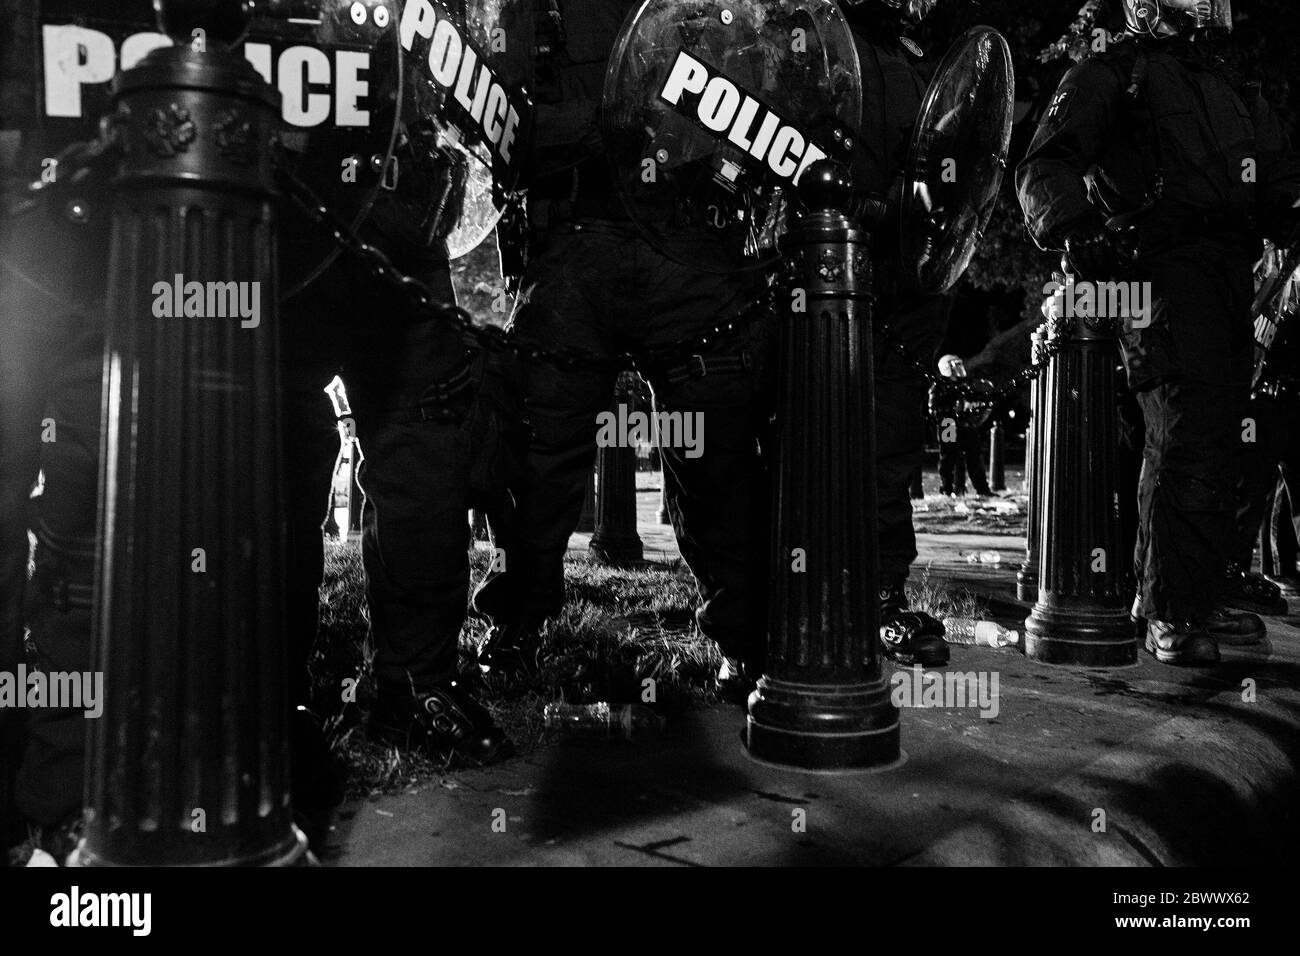 Washington, Distrito de Columbia, EE.UU. 30 de mayo de 2020. Los manifestantes reaccionan ante la muerte de George Floyd en Missouri protestando frente a la Casa Blanca por los derechos de los negros. Crédito: Shane Lewis Bahn/One Up Top Foto de stock